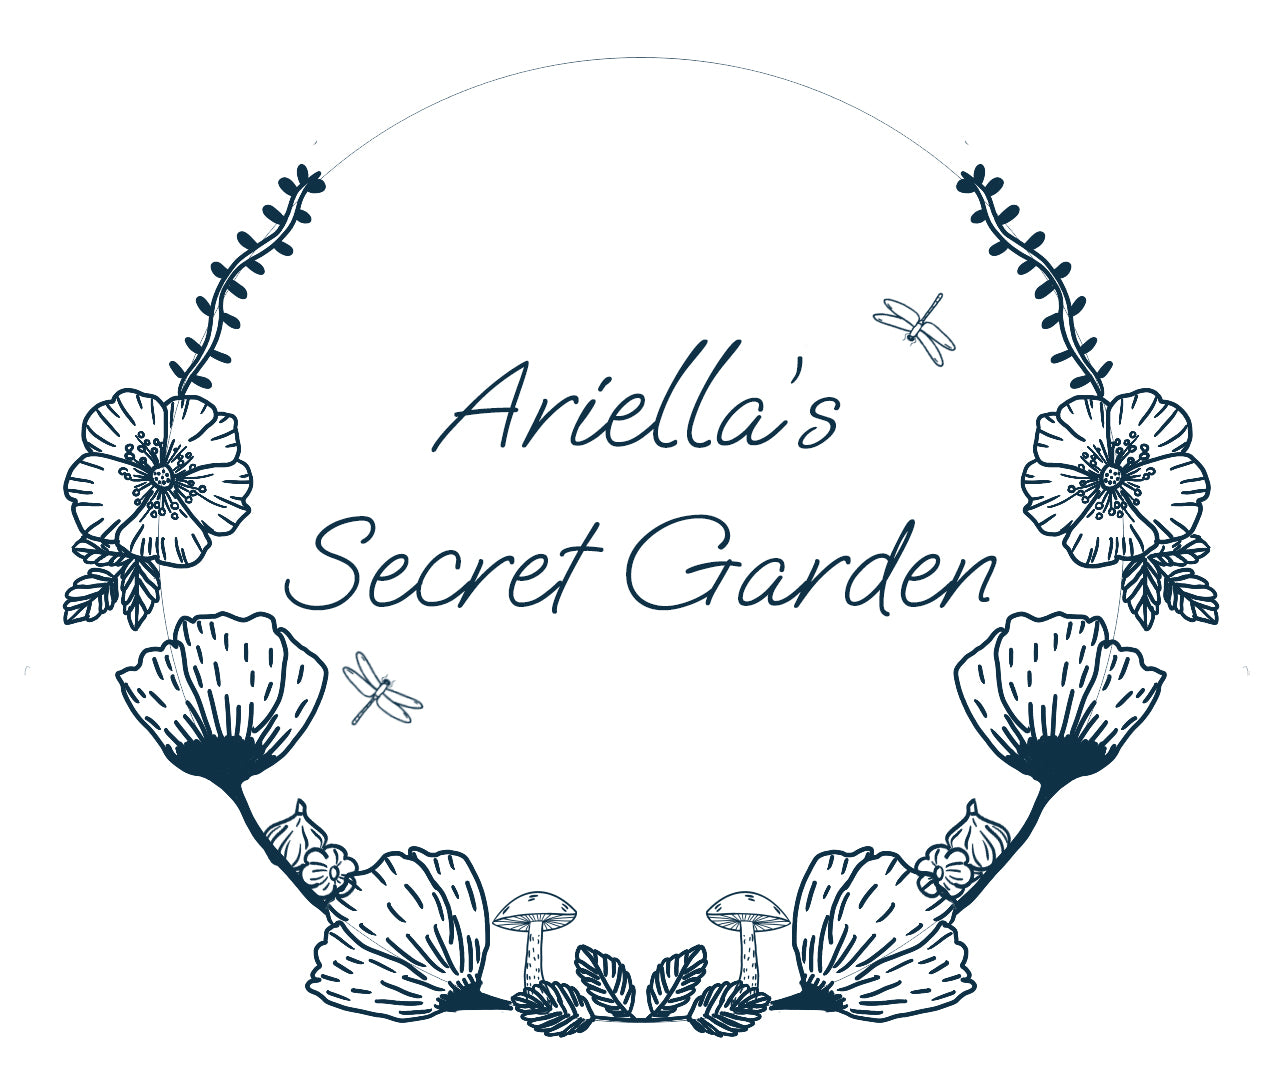 – ariellas.secret.garden